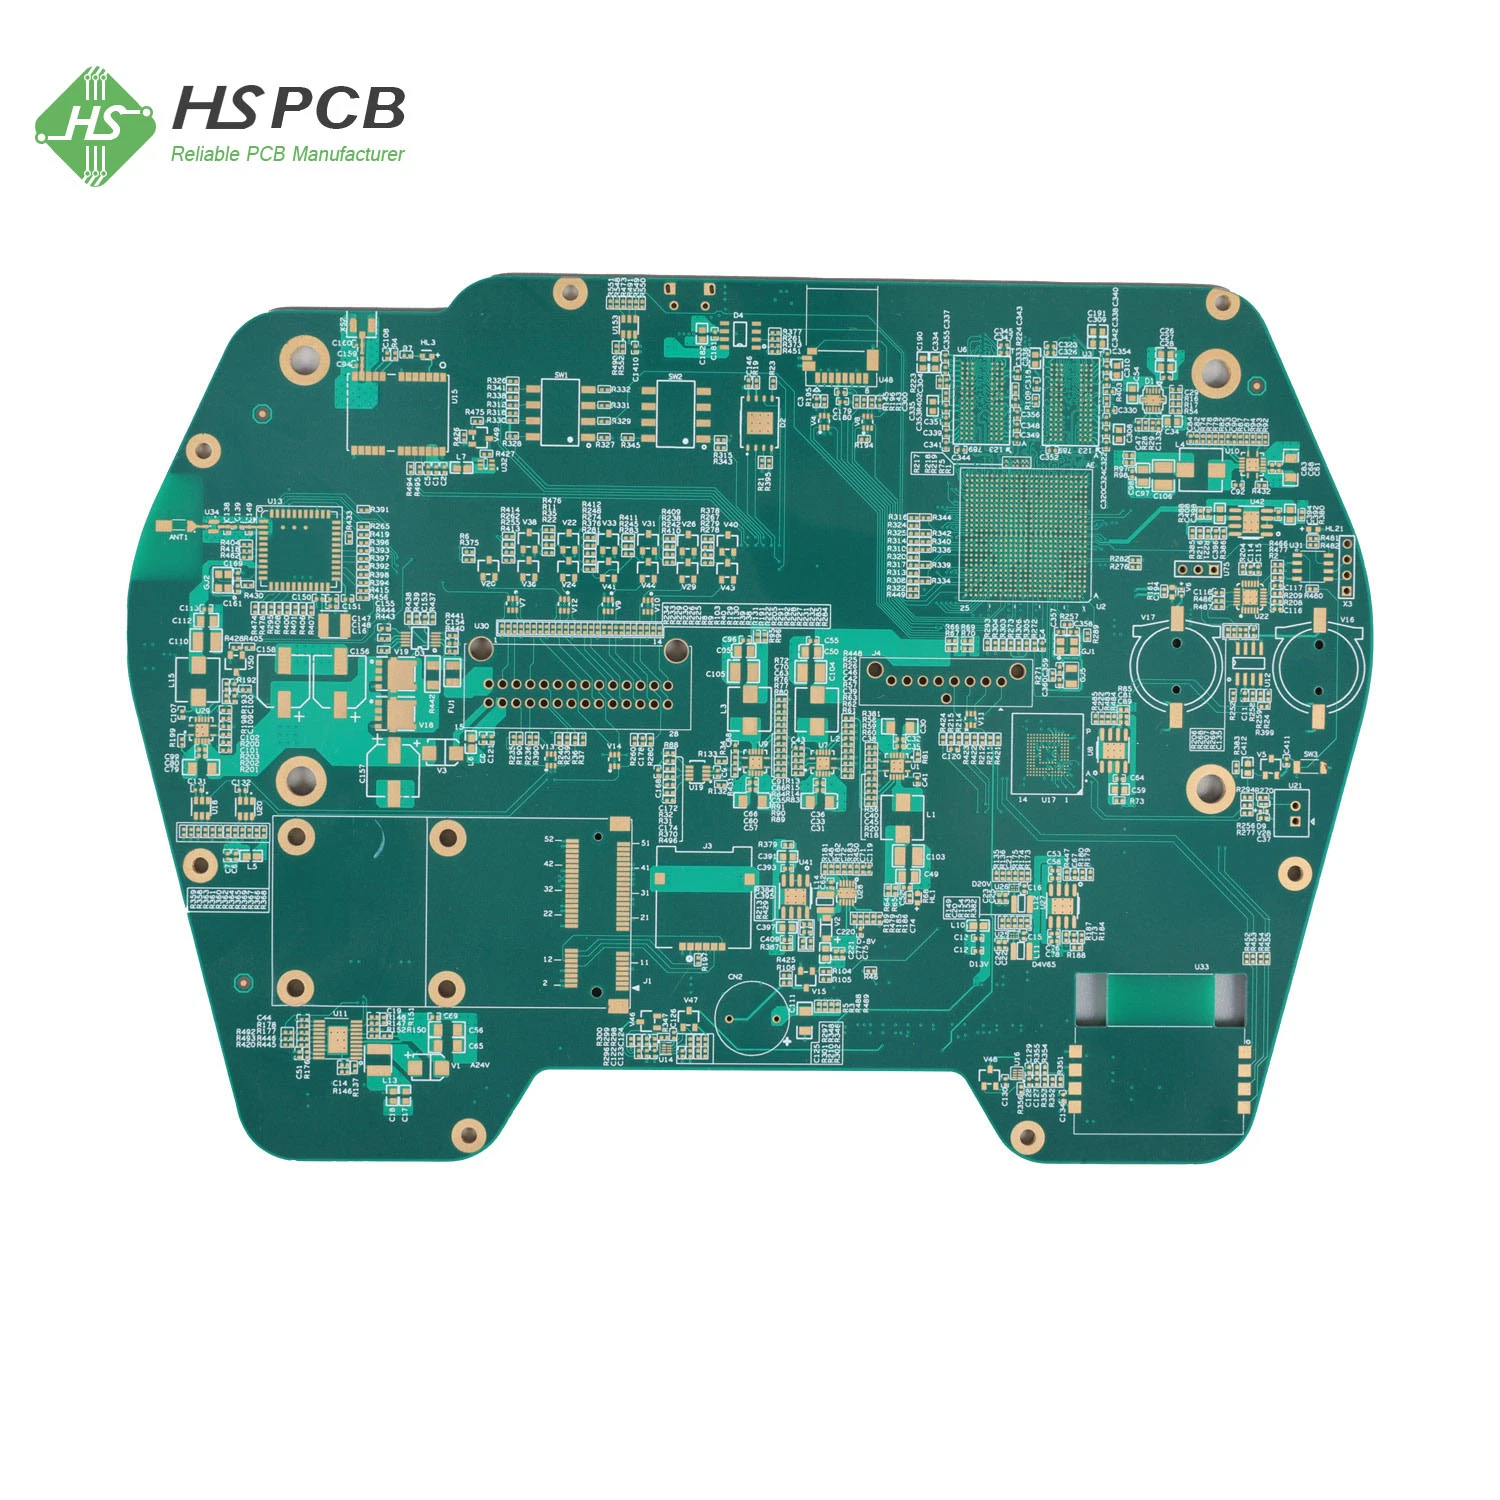 Fabricante de Placas de Circuito Impresso de Alta Qualidade em Múltiplas Camadas para Eletrônicos de Consumo.